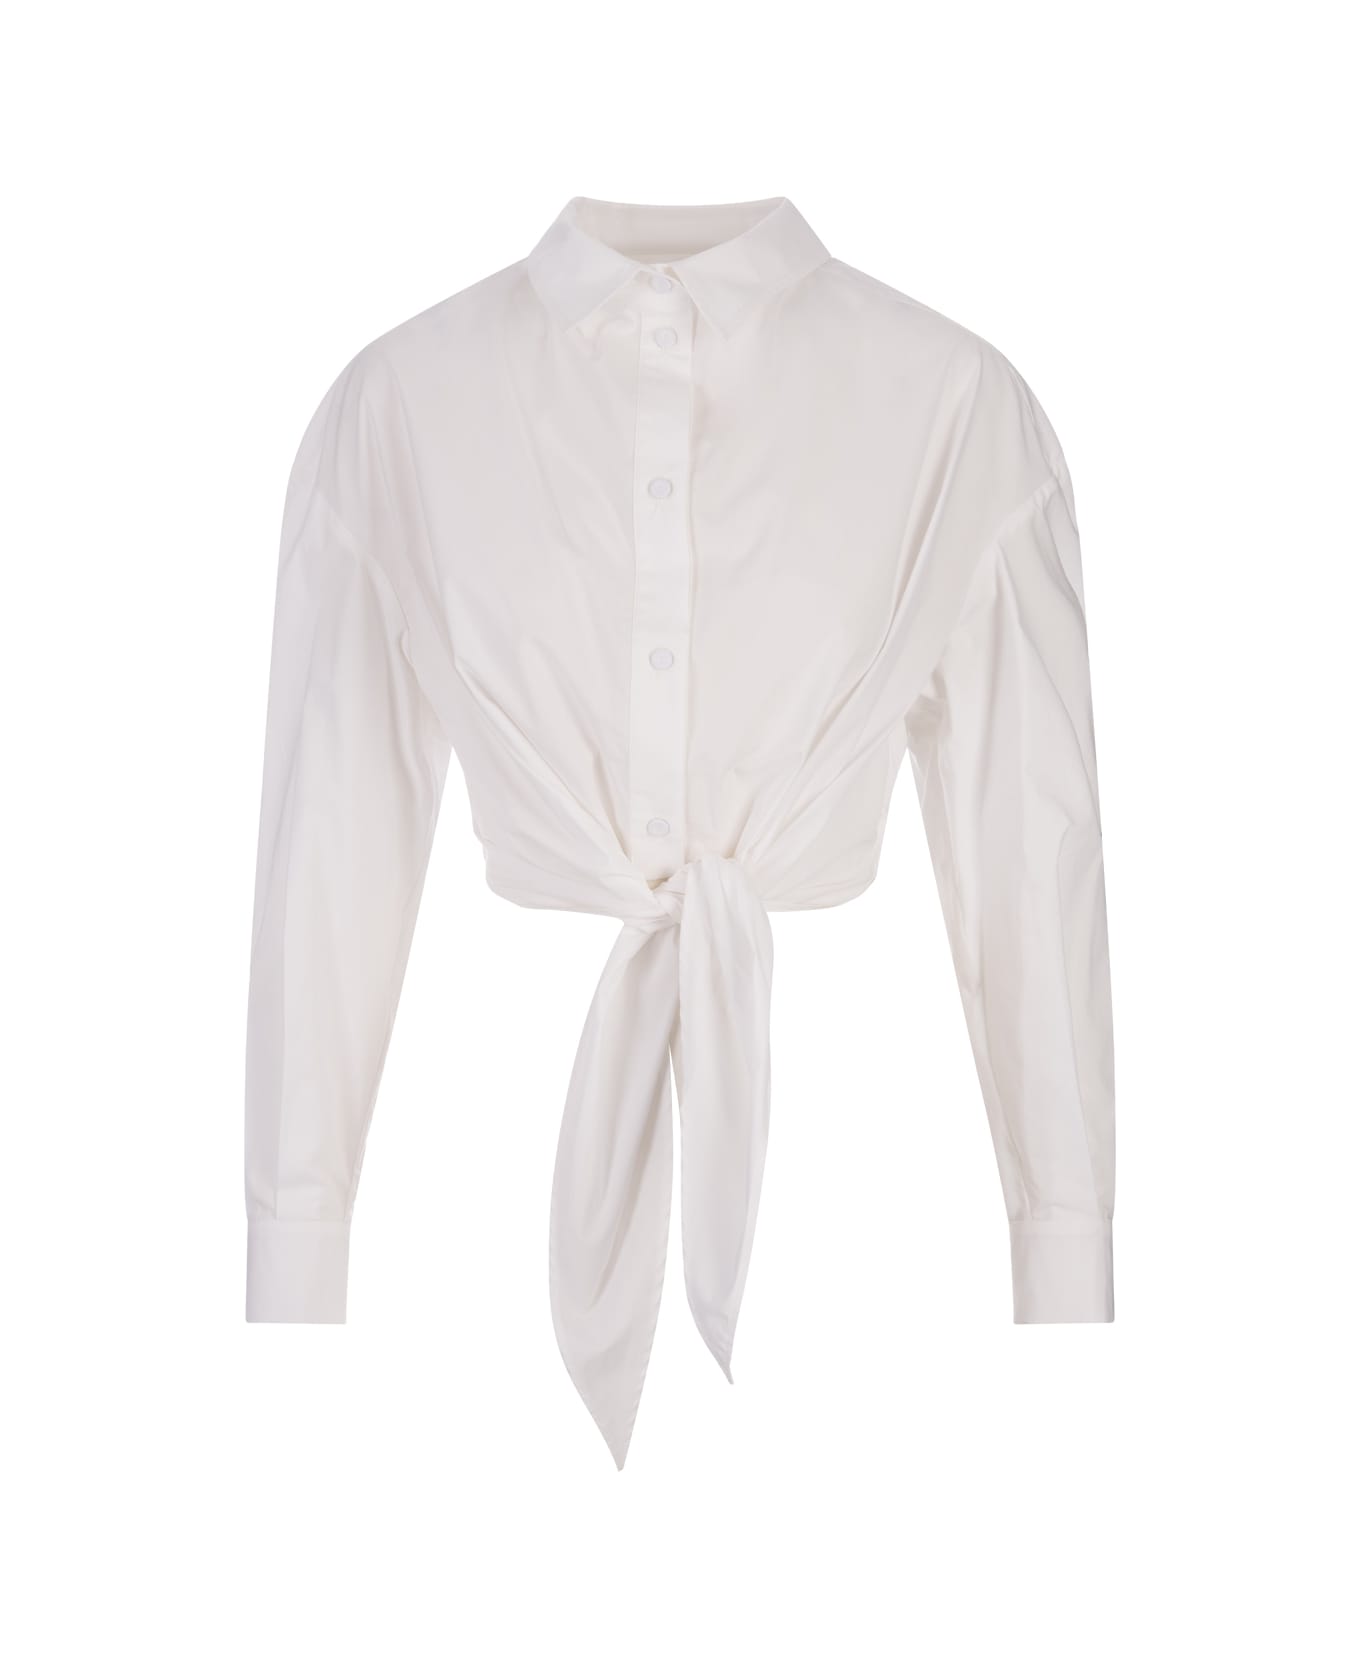 Alessandro Enriquez White Cotton Shirt With Knot - White シャツ